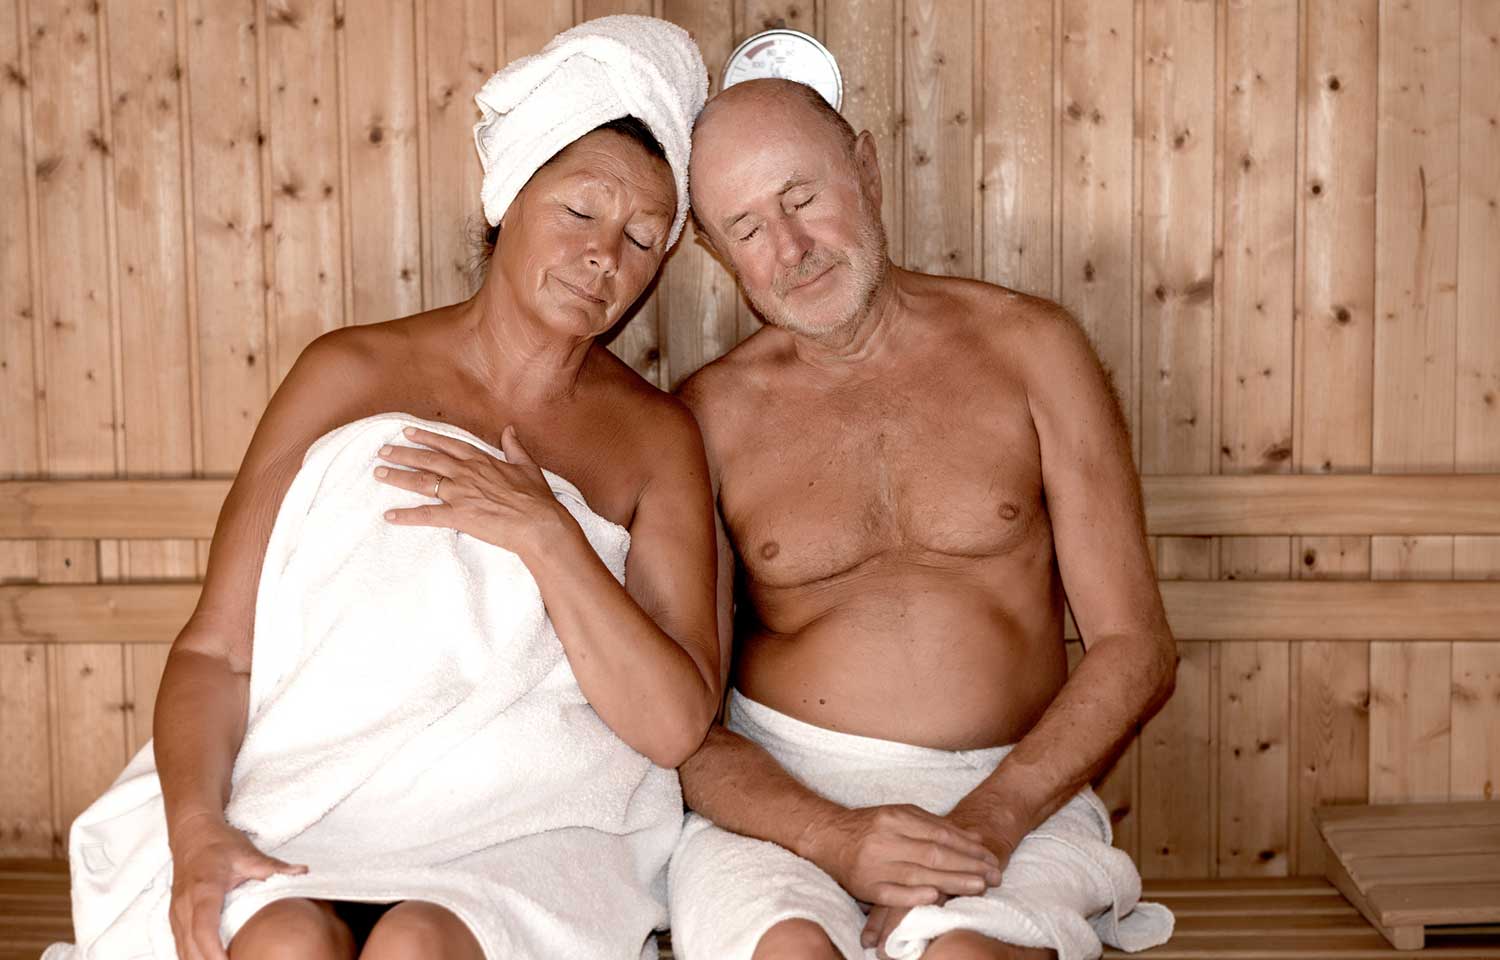 männer in der sauna nackt